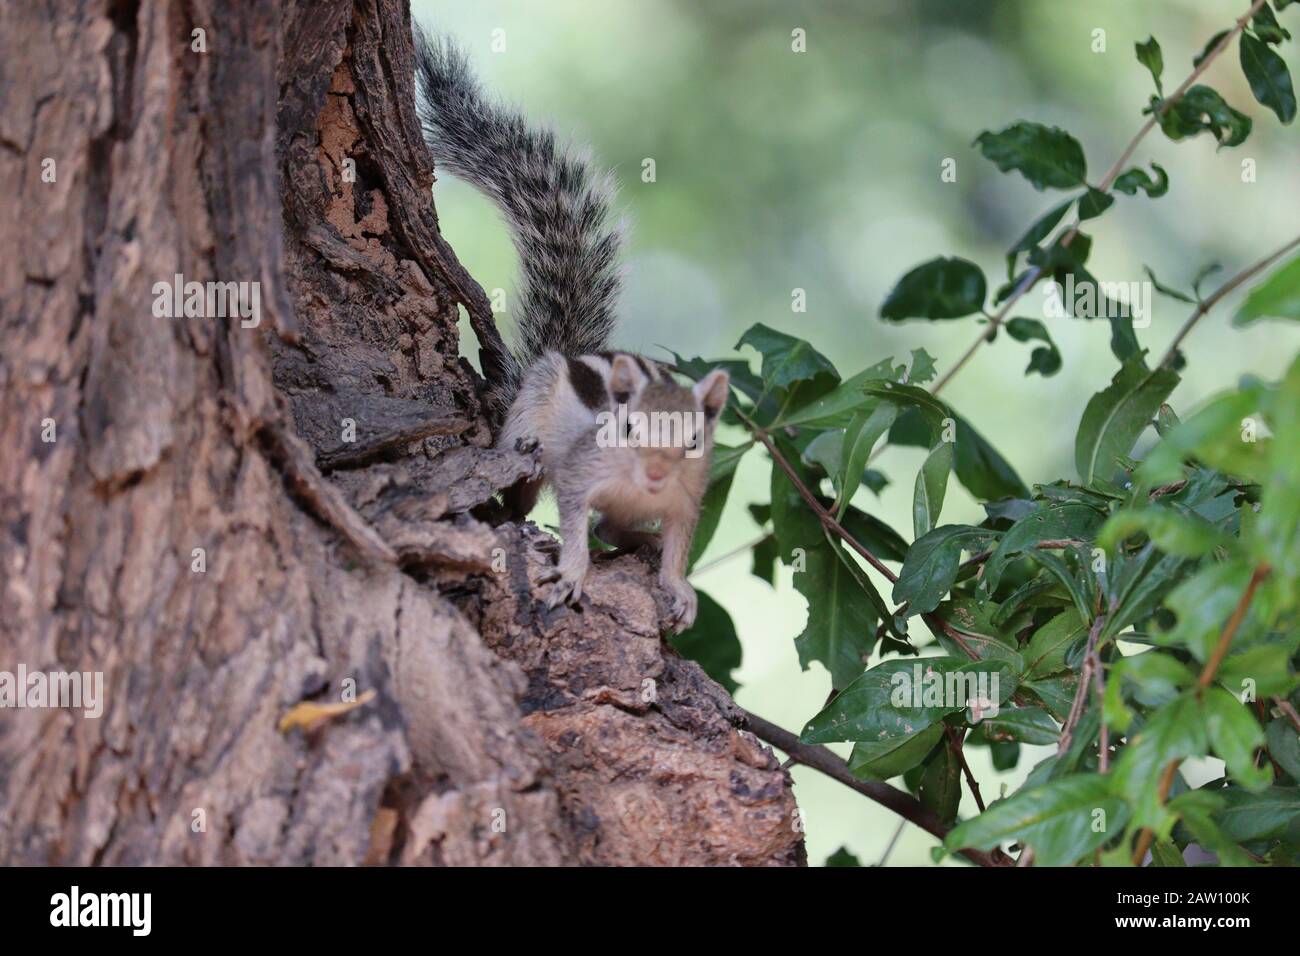 Nahaufnahme eines braunen Eichhörnchens, das in offener Natur auf dem Baum steht, draußen Straßentiere, Eichhörnchenbilder Stockfoto